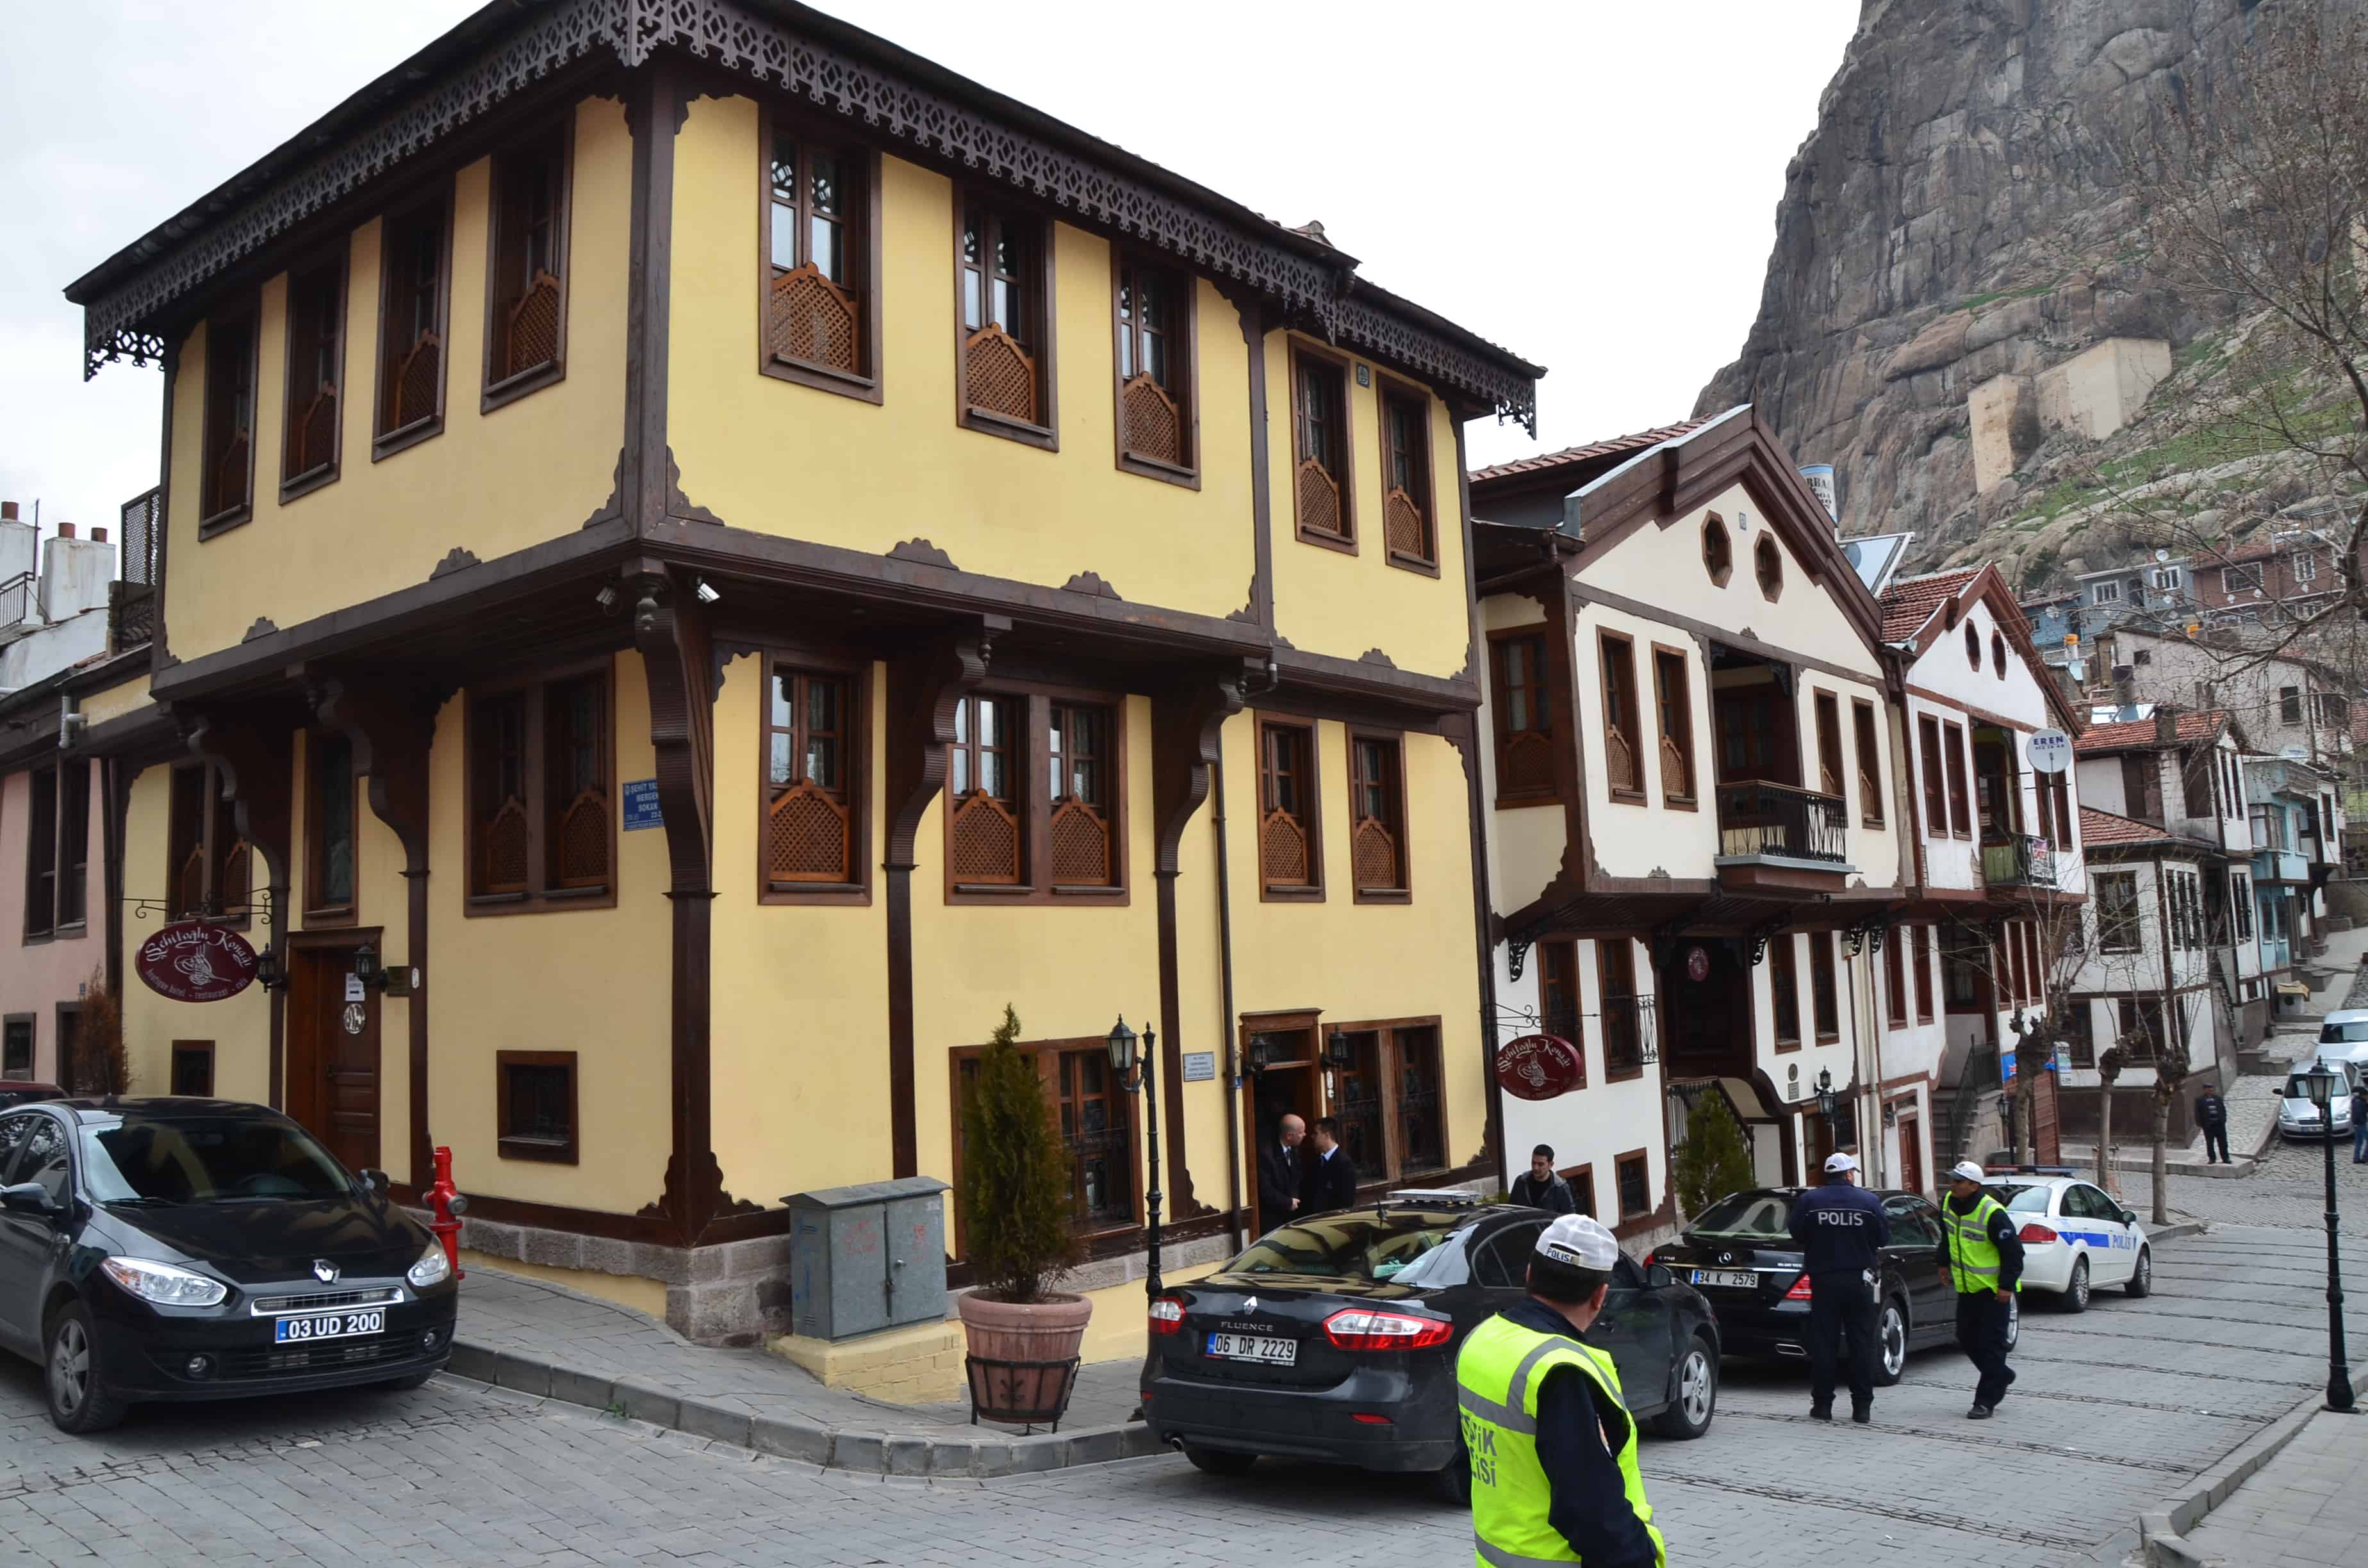 Şehitoğlu Mansion (Şehitoğlu Konağı) in Afyon, Turkey